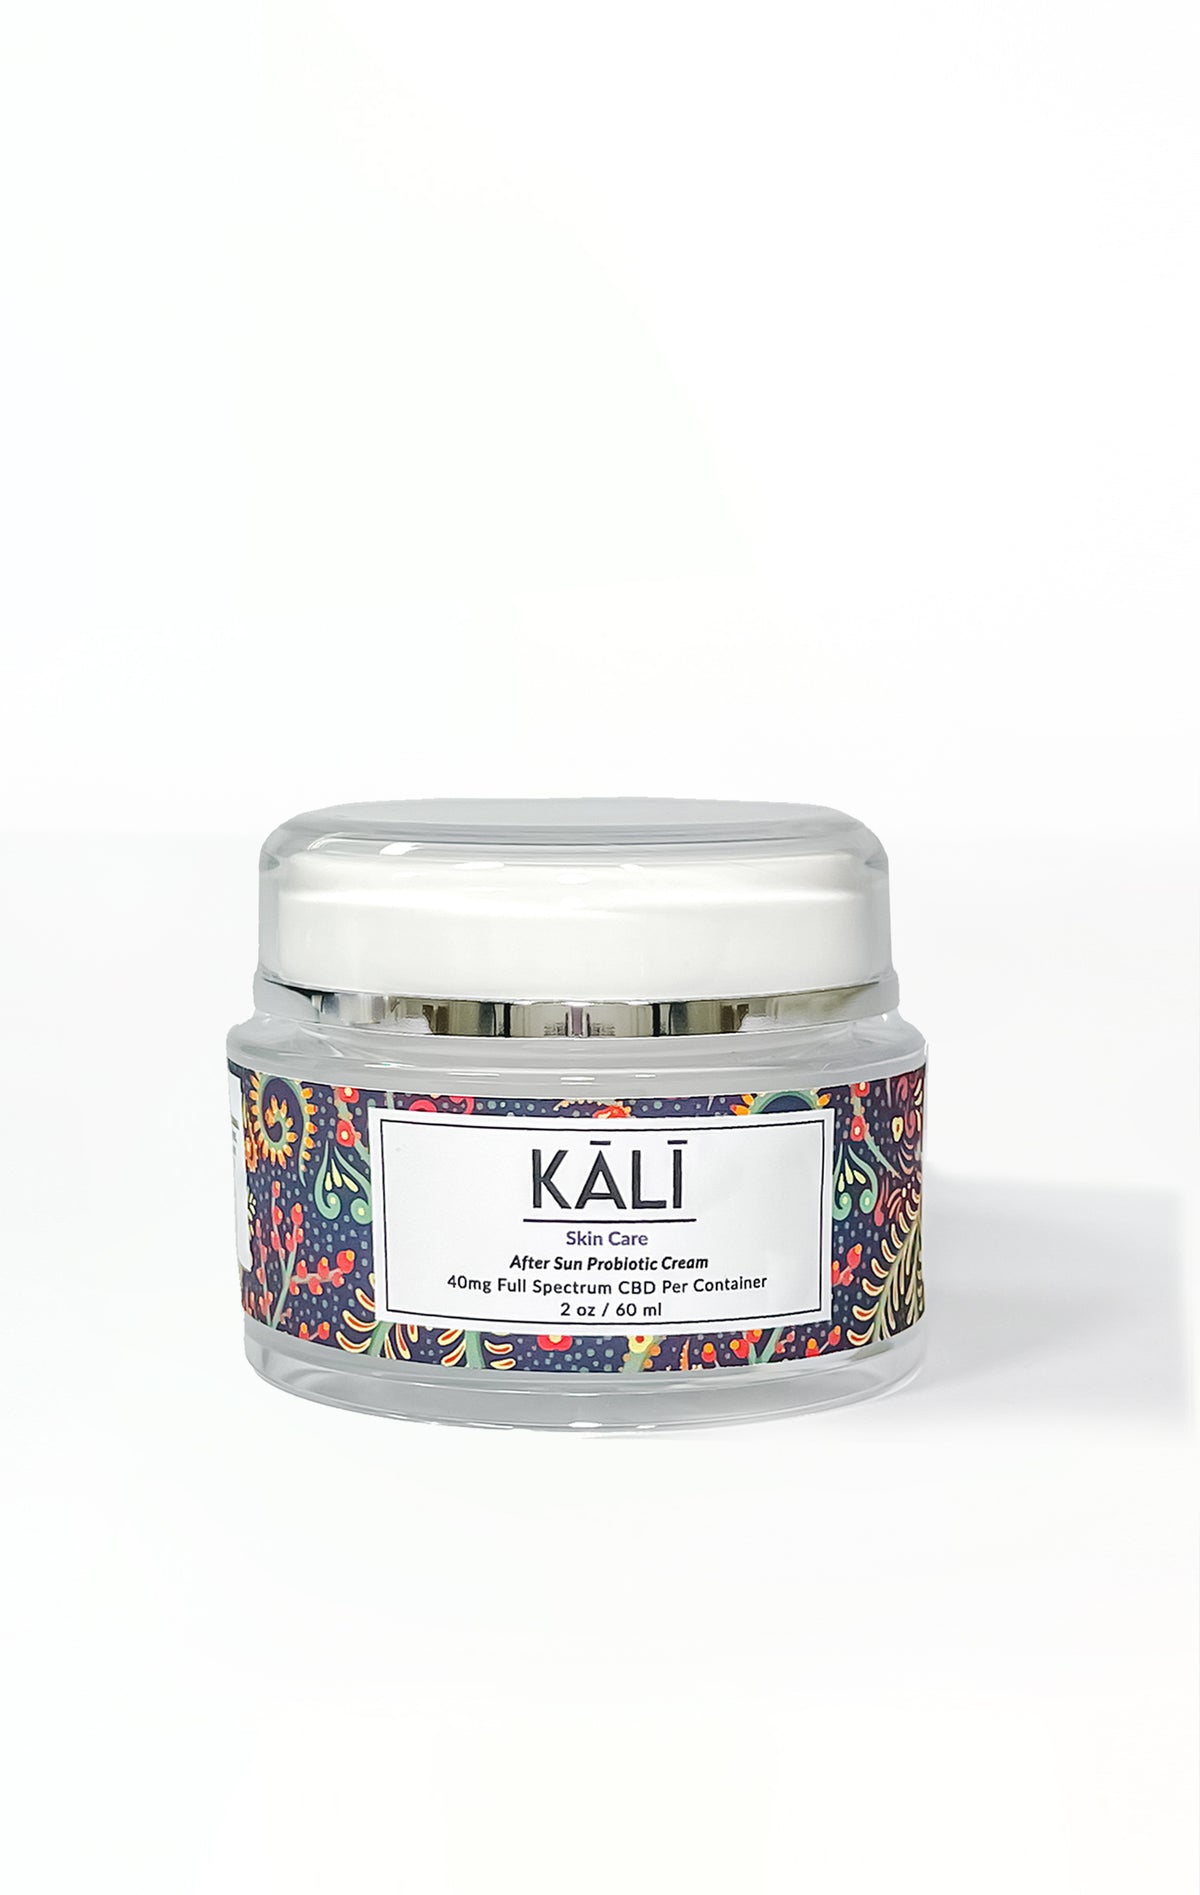 Kali - CBD After Sun Probiotic Cream